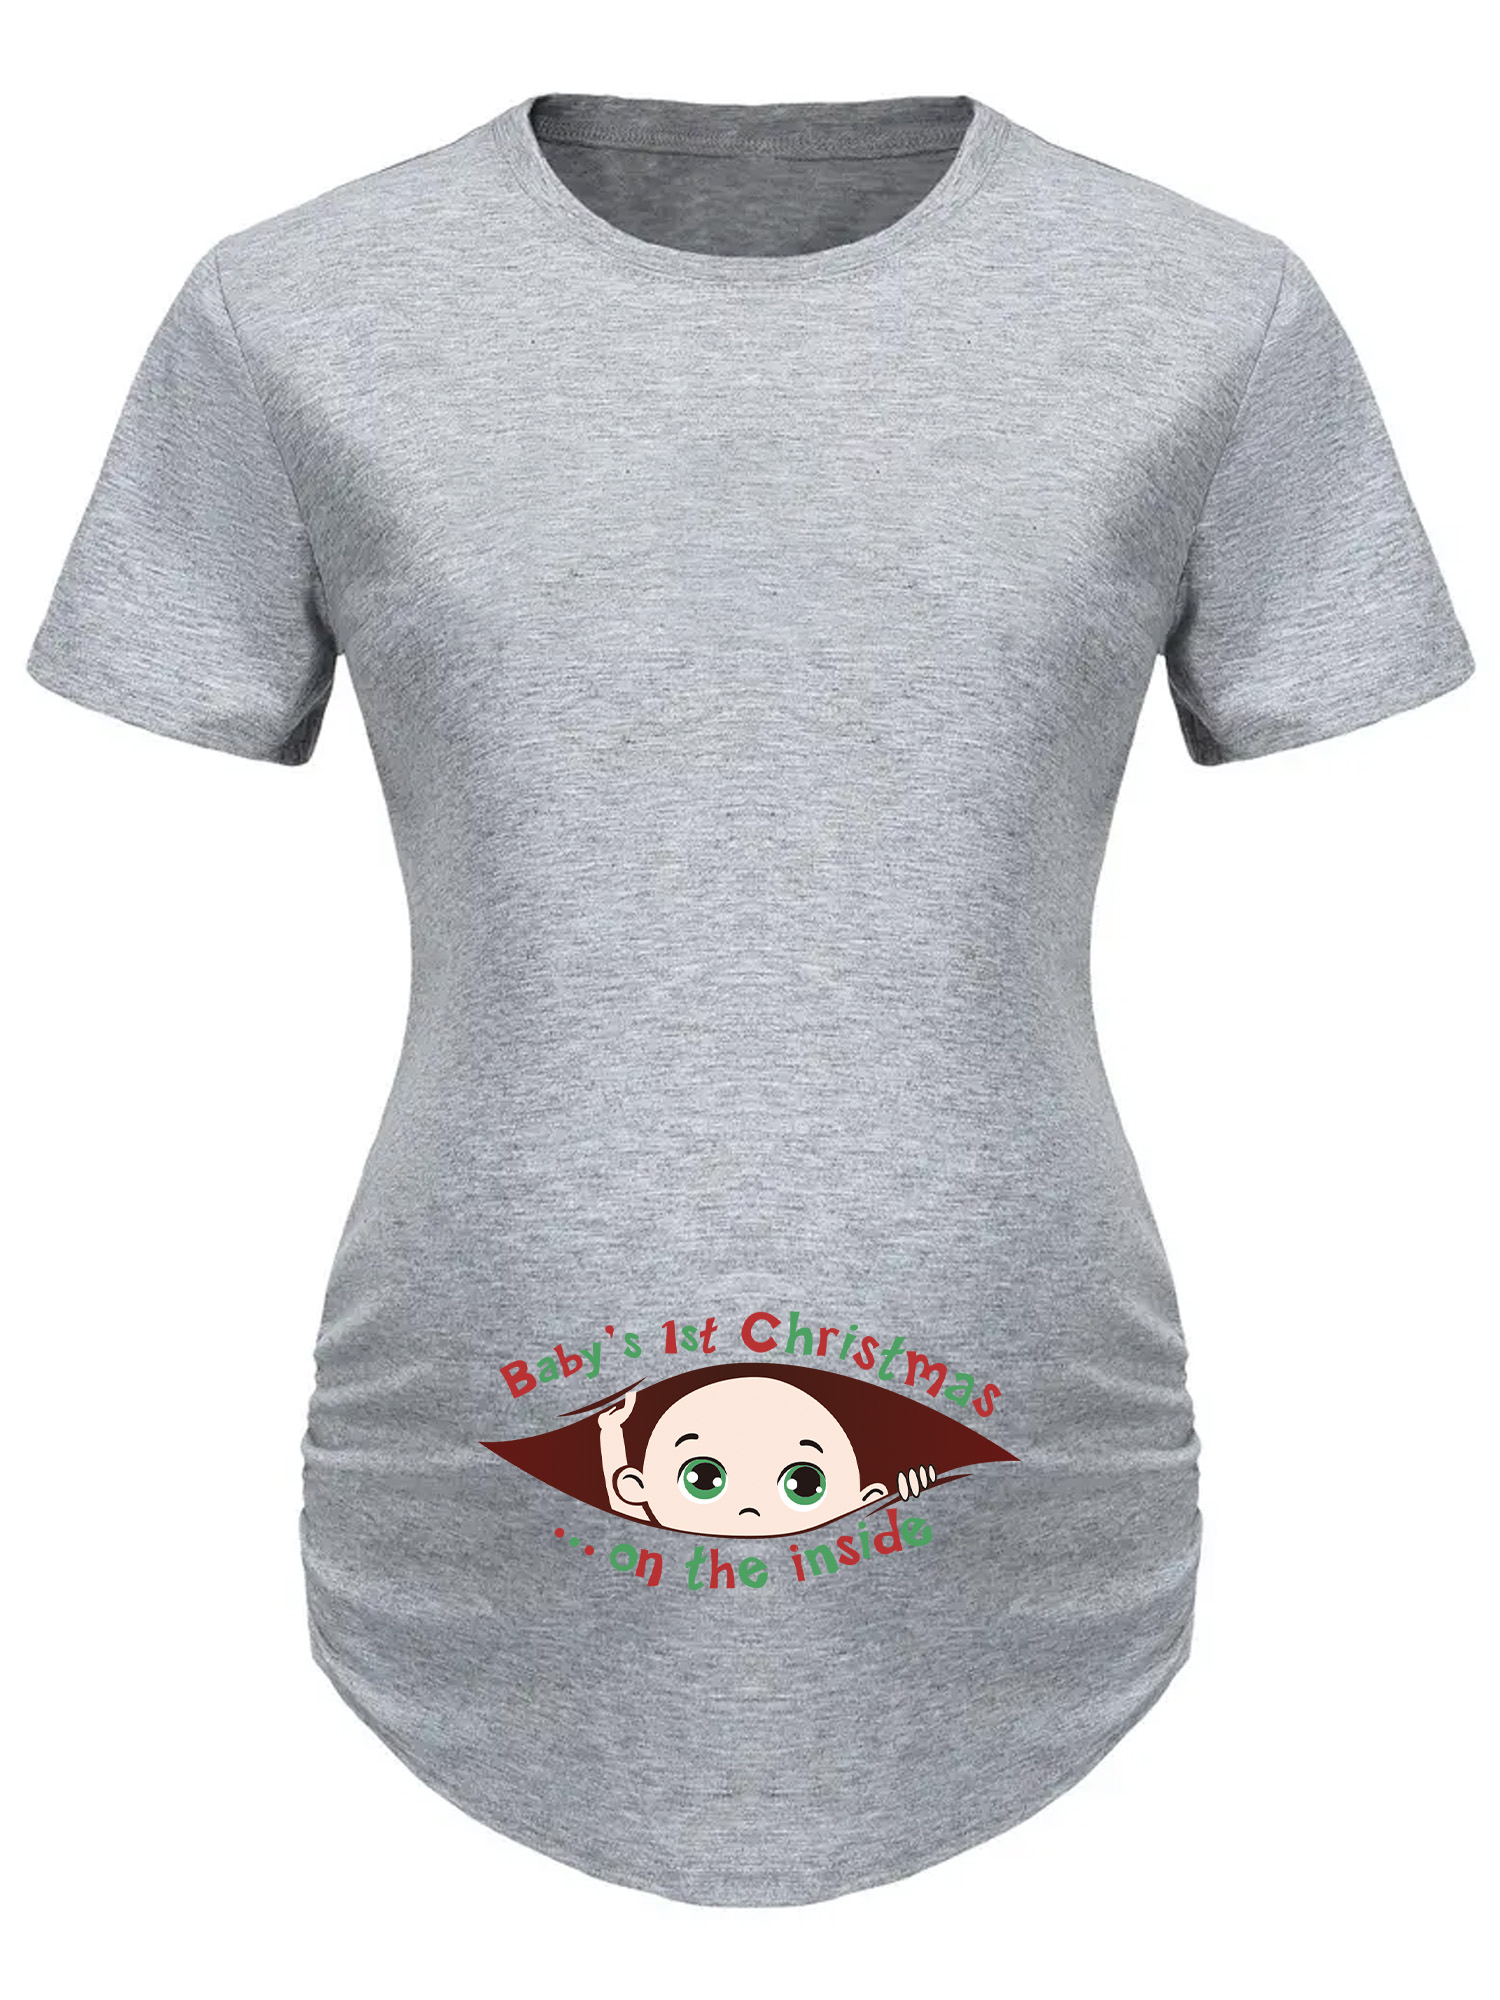 Mujeres Embarazadas Moda Camiseta Estampada Navidad Cuello - Temu